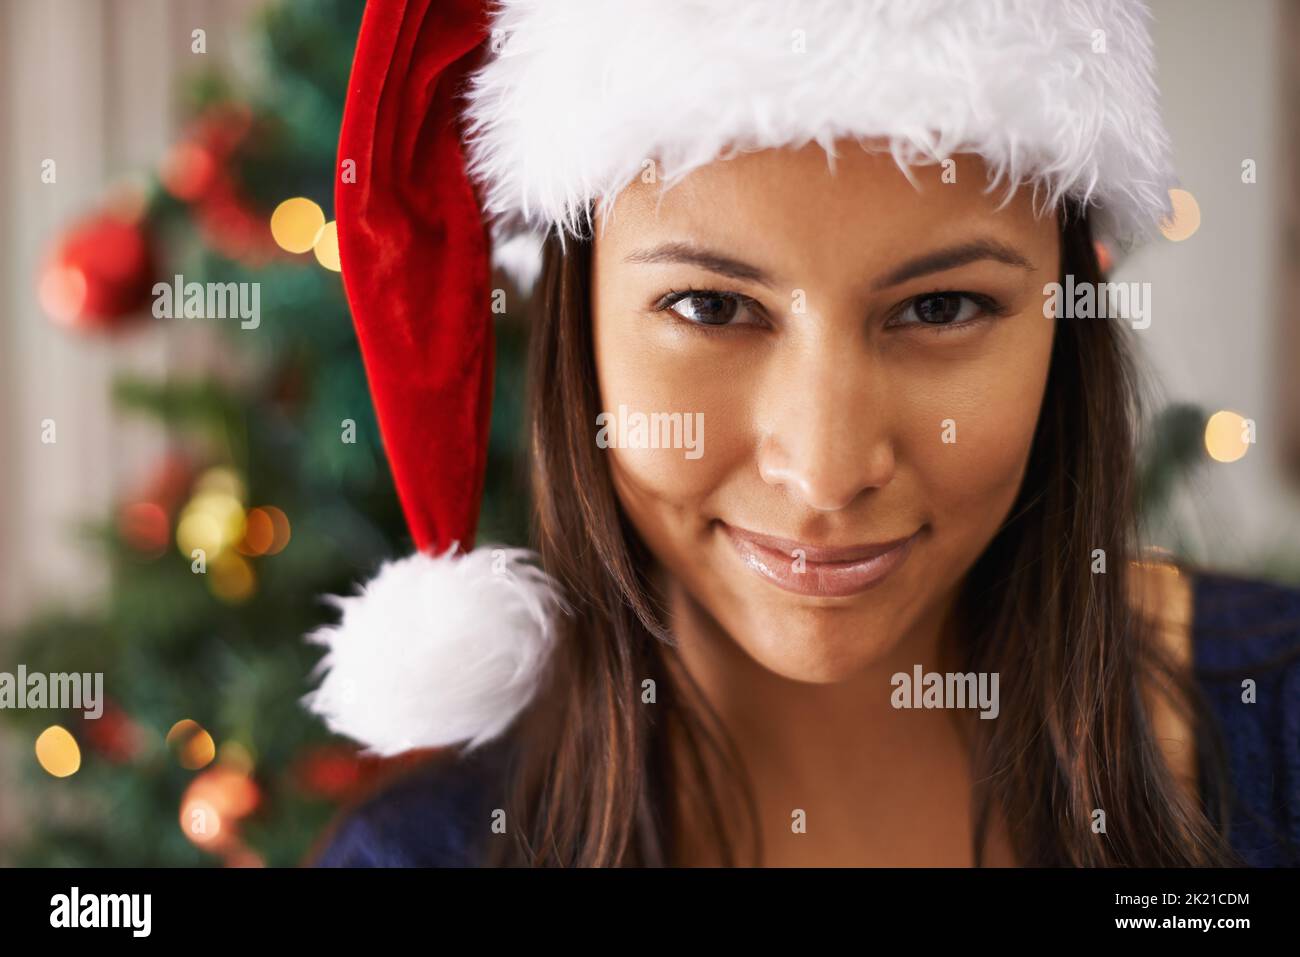 Dies ist ihre Lieblingszeit im Jahr. Nahaufnahme einer schönen Frau mit weihnachtsmann-Hut. Stockfoto